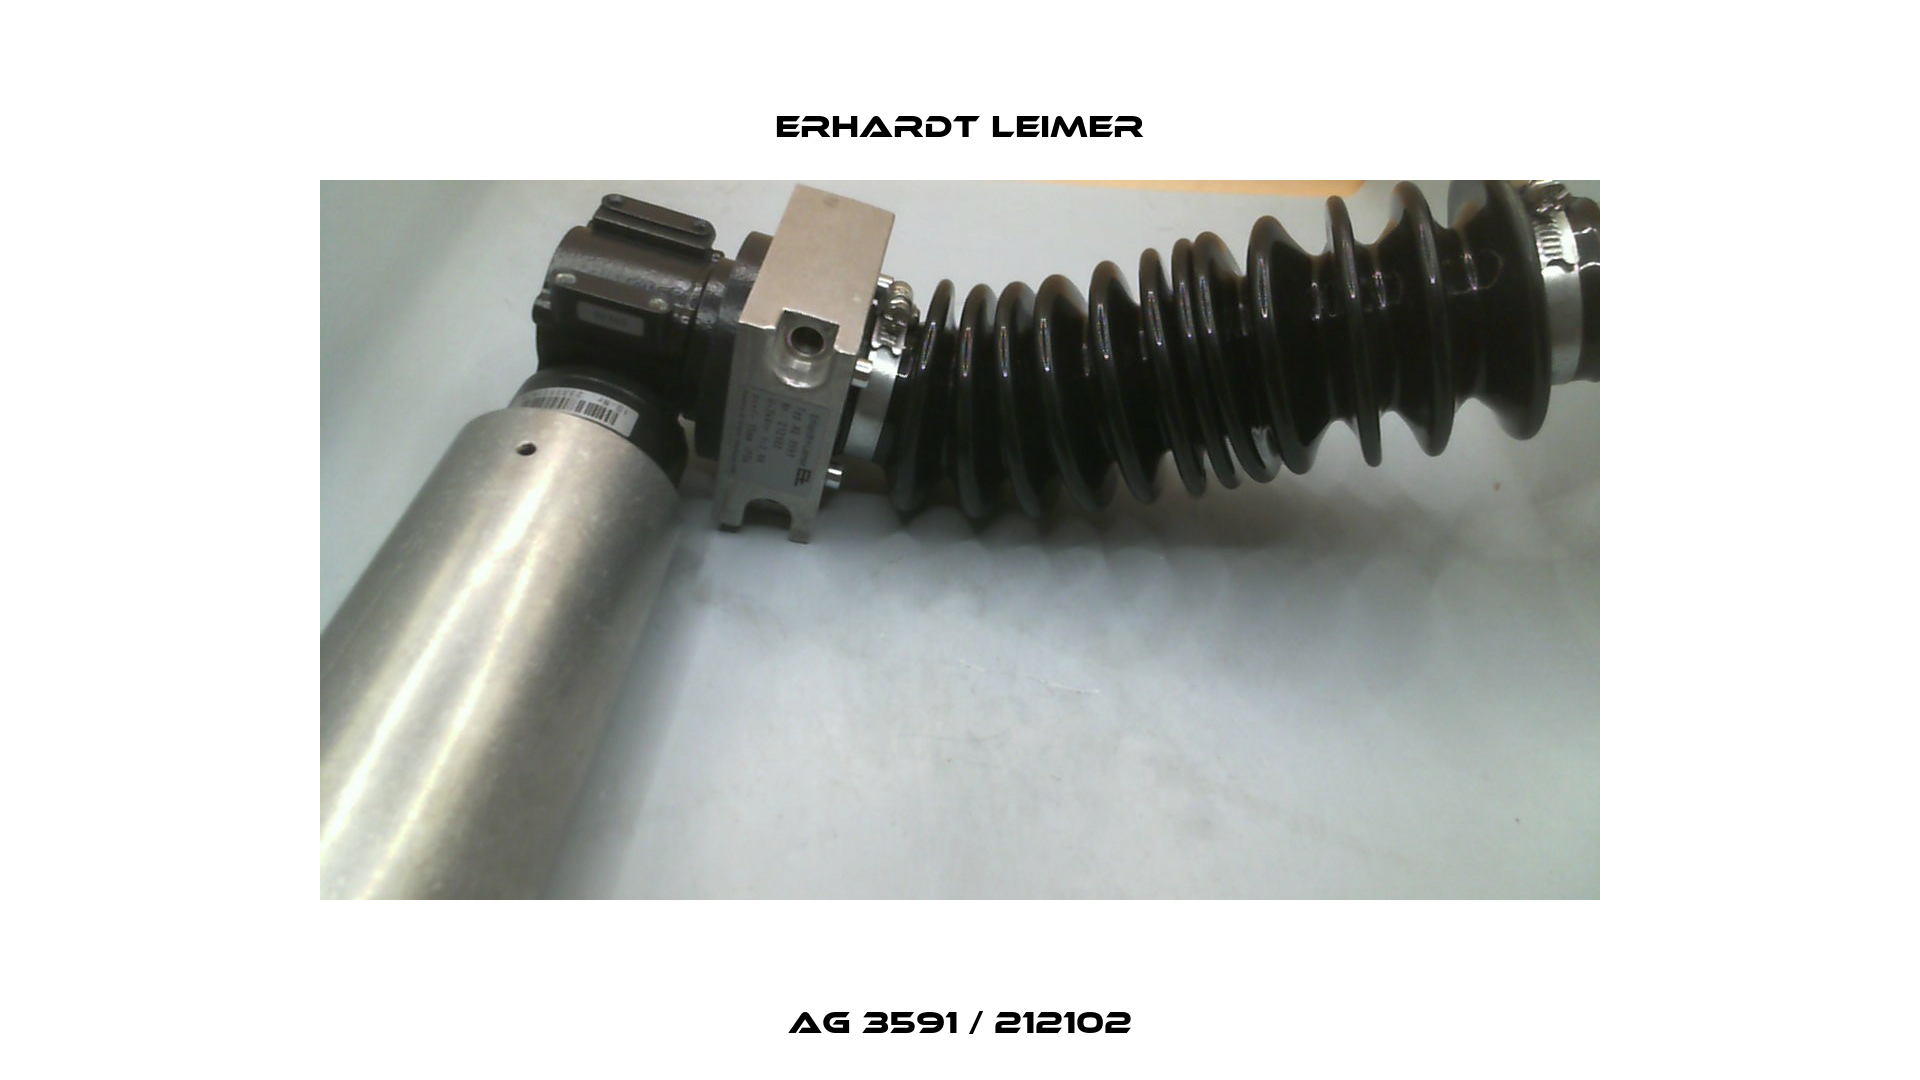 AG 3591 / 212102 Erhardt Leimer